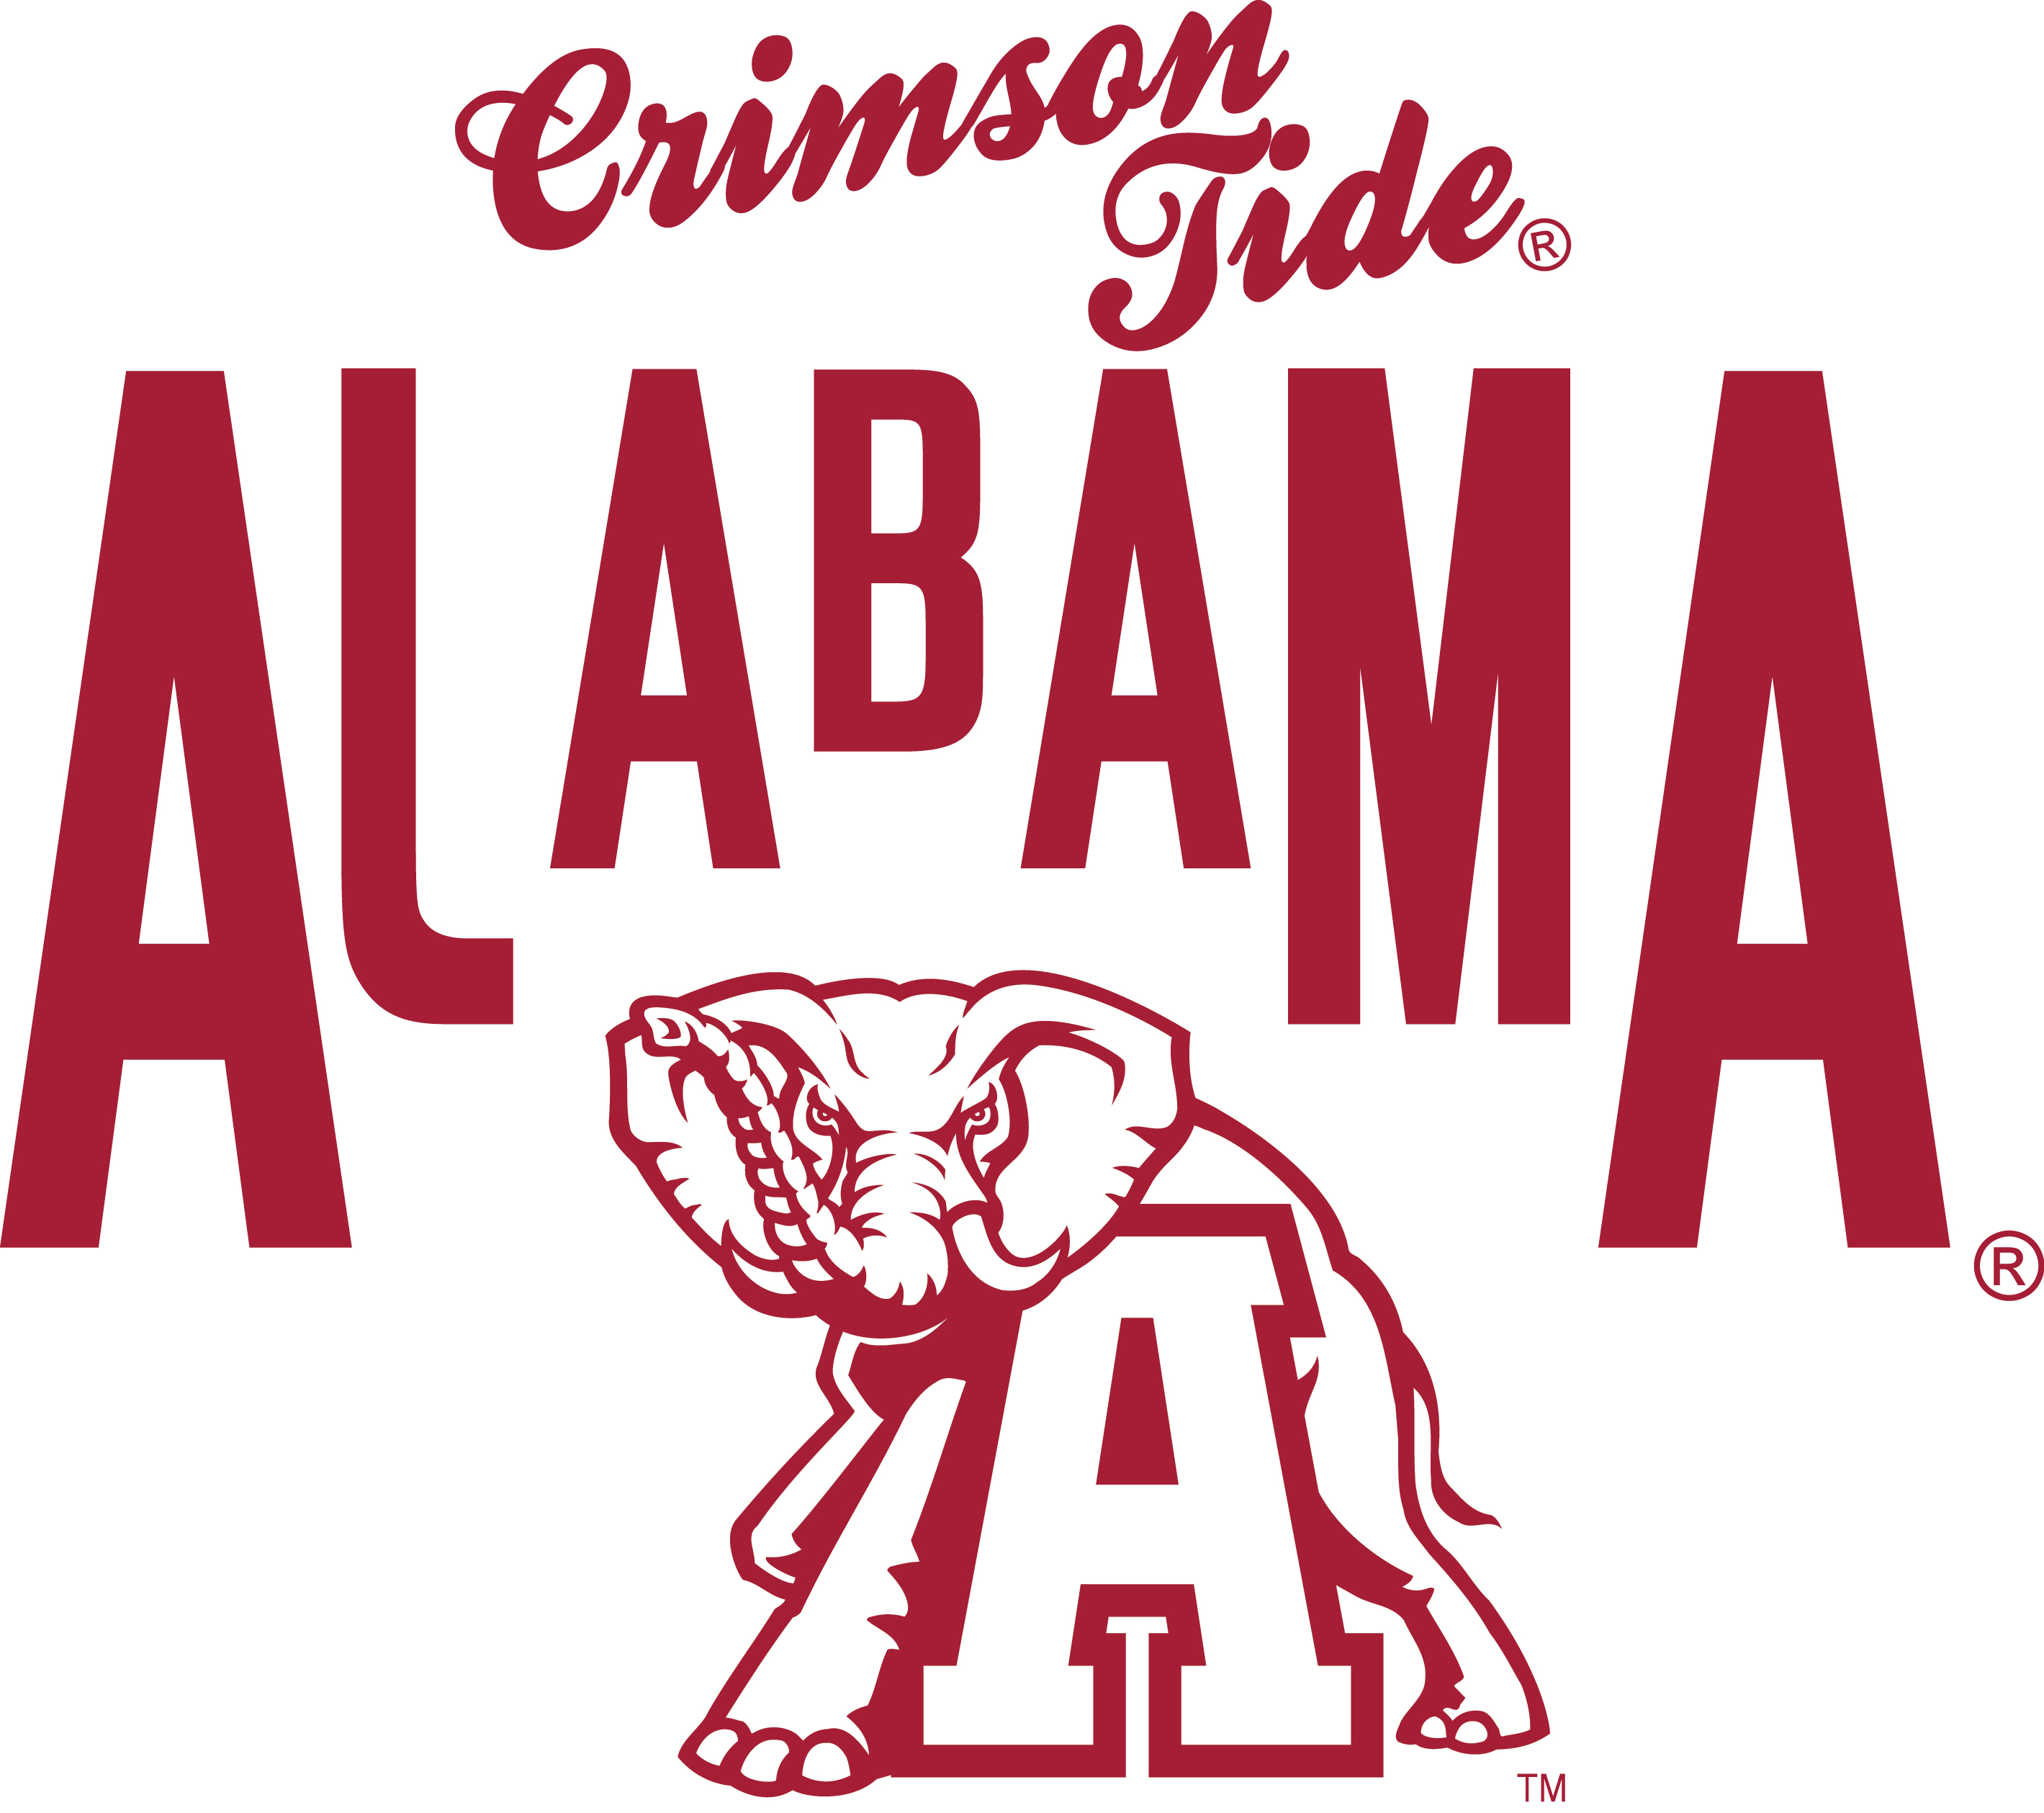 University of Alabama Logos images